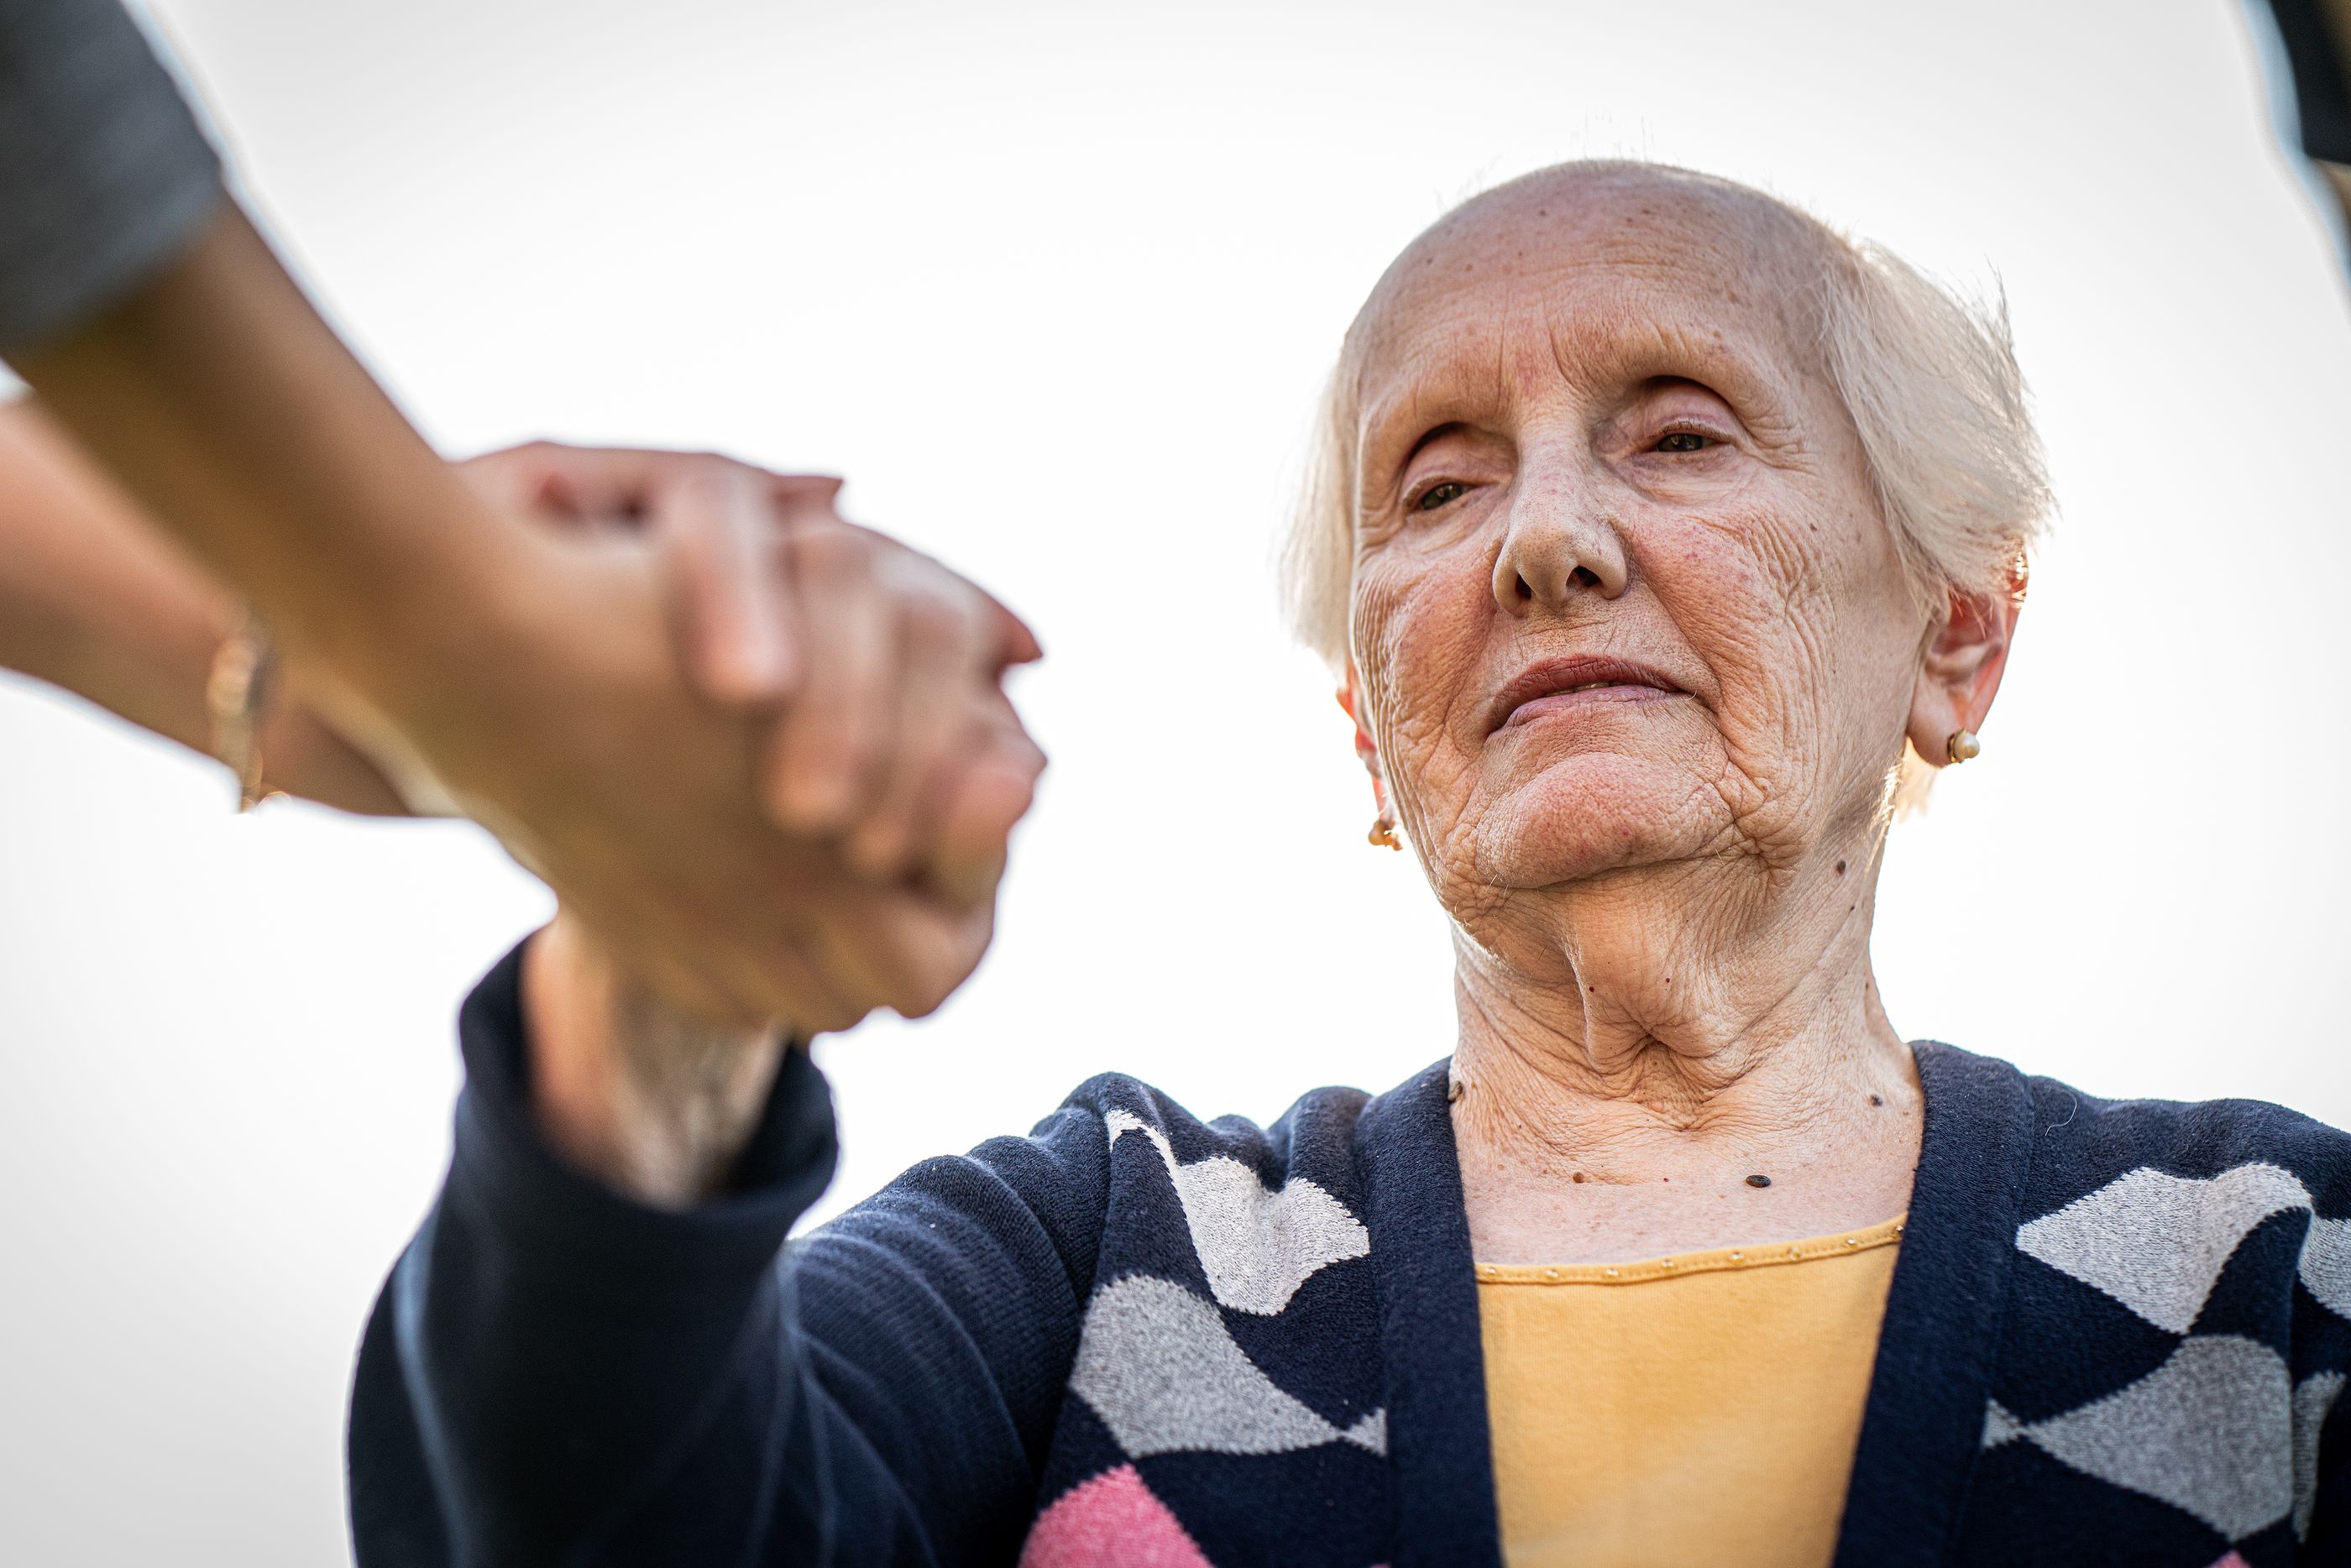 CONFEMAC celebrará unas jornadas para concienciar sobre el maltrato a los mayores. Foto: Bigstock